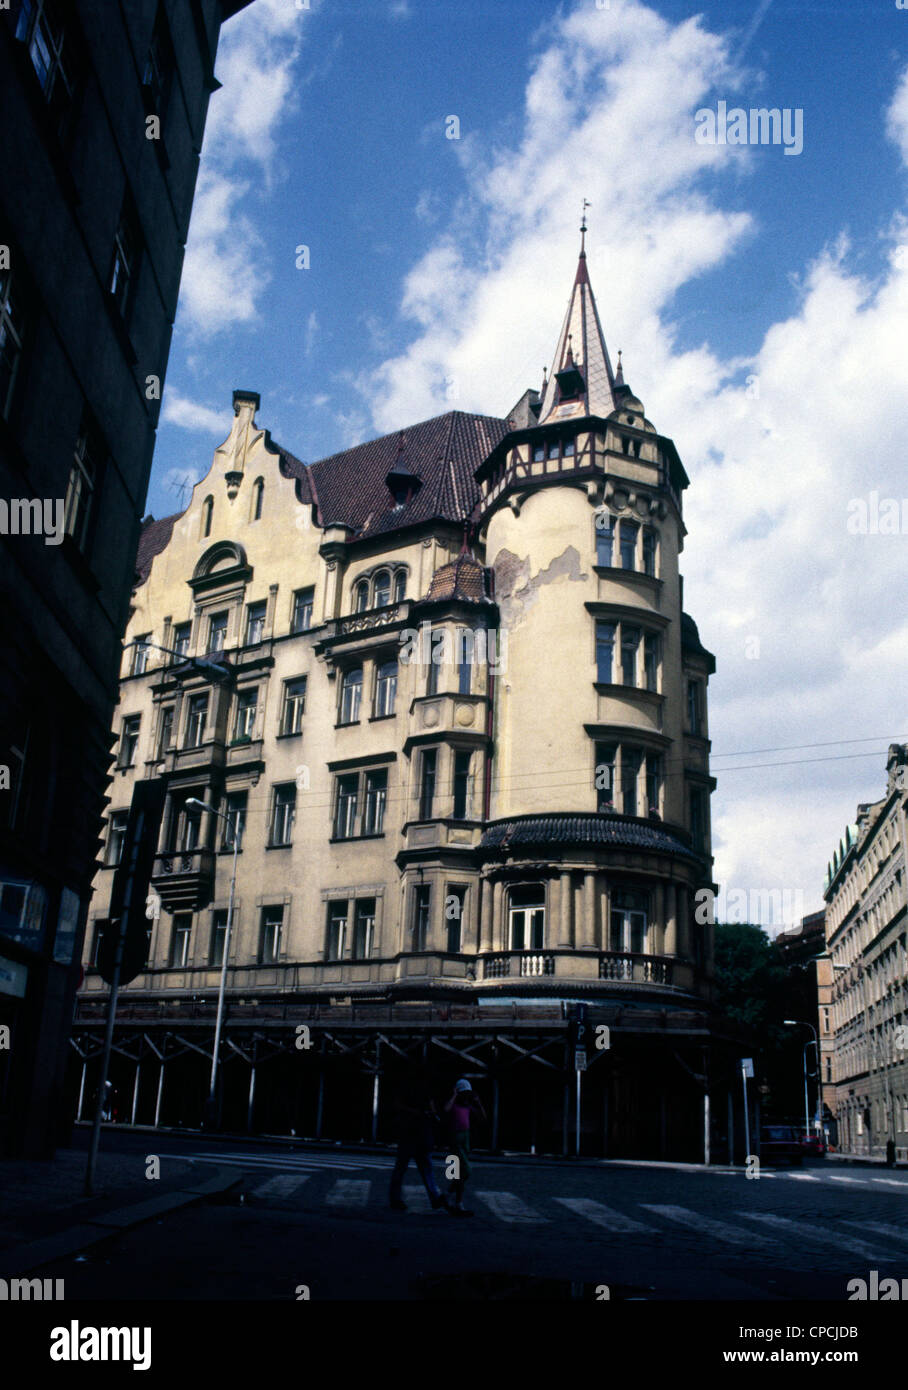 Prag - Tschechische Hauptstadt im letzten Jahrzehnt des Kommunismus Regime. Foto im Jahr 1988. Jahr. Stockfoto